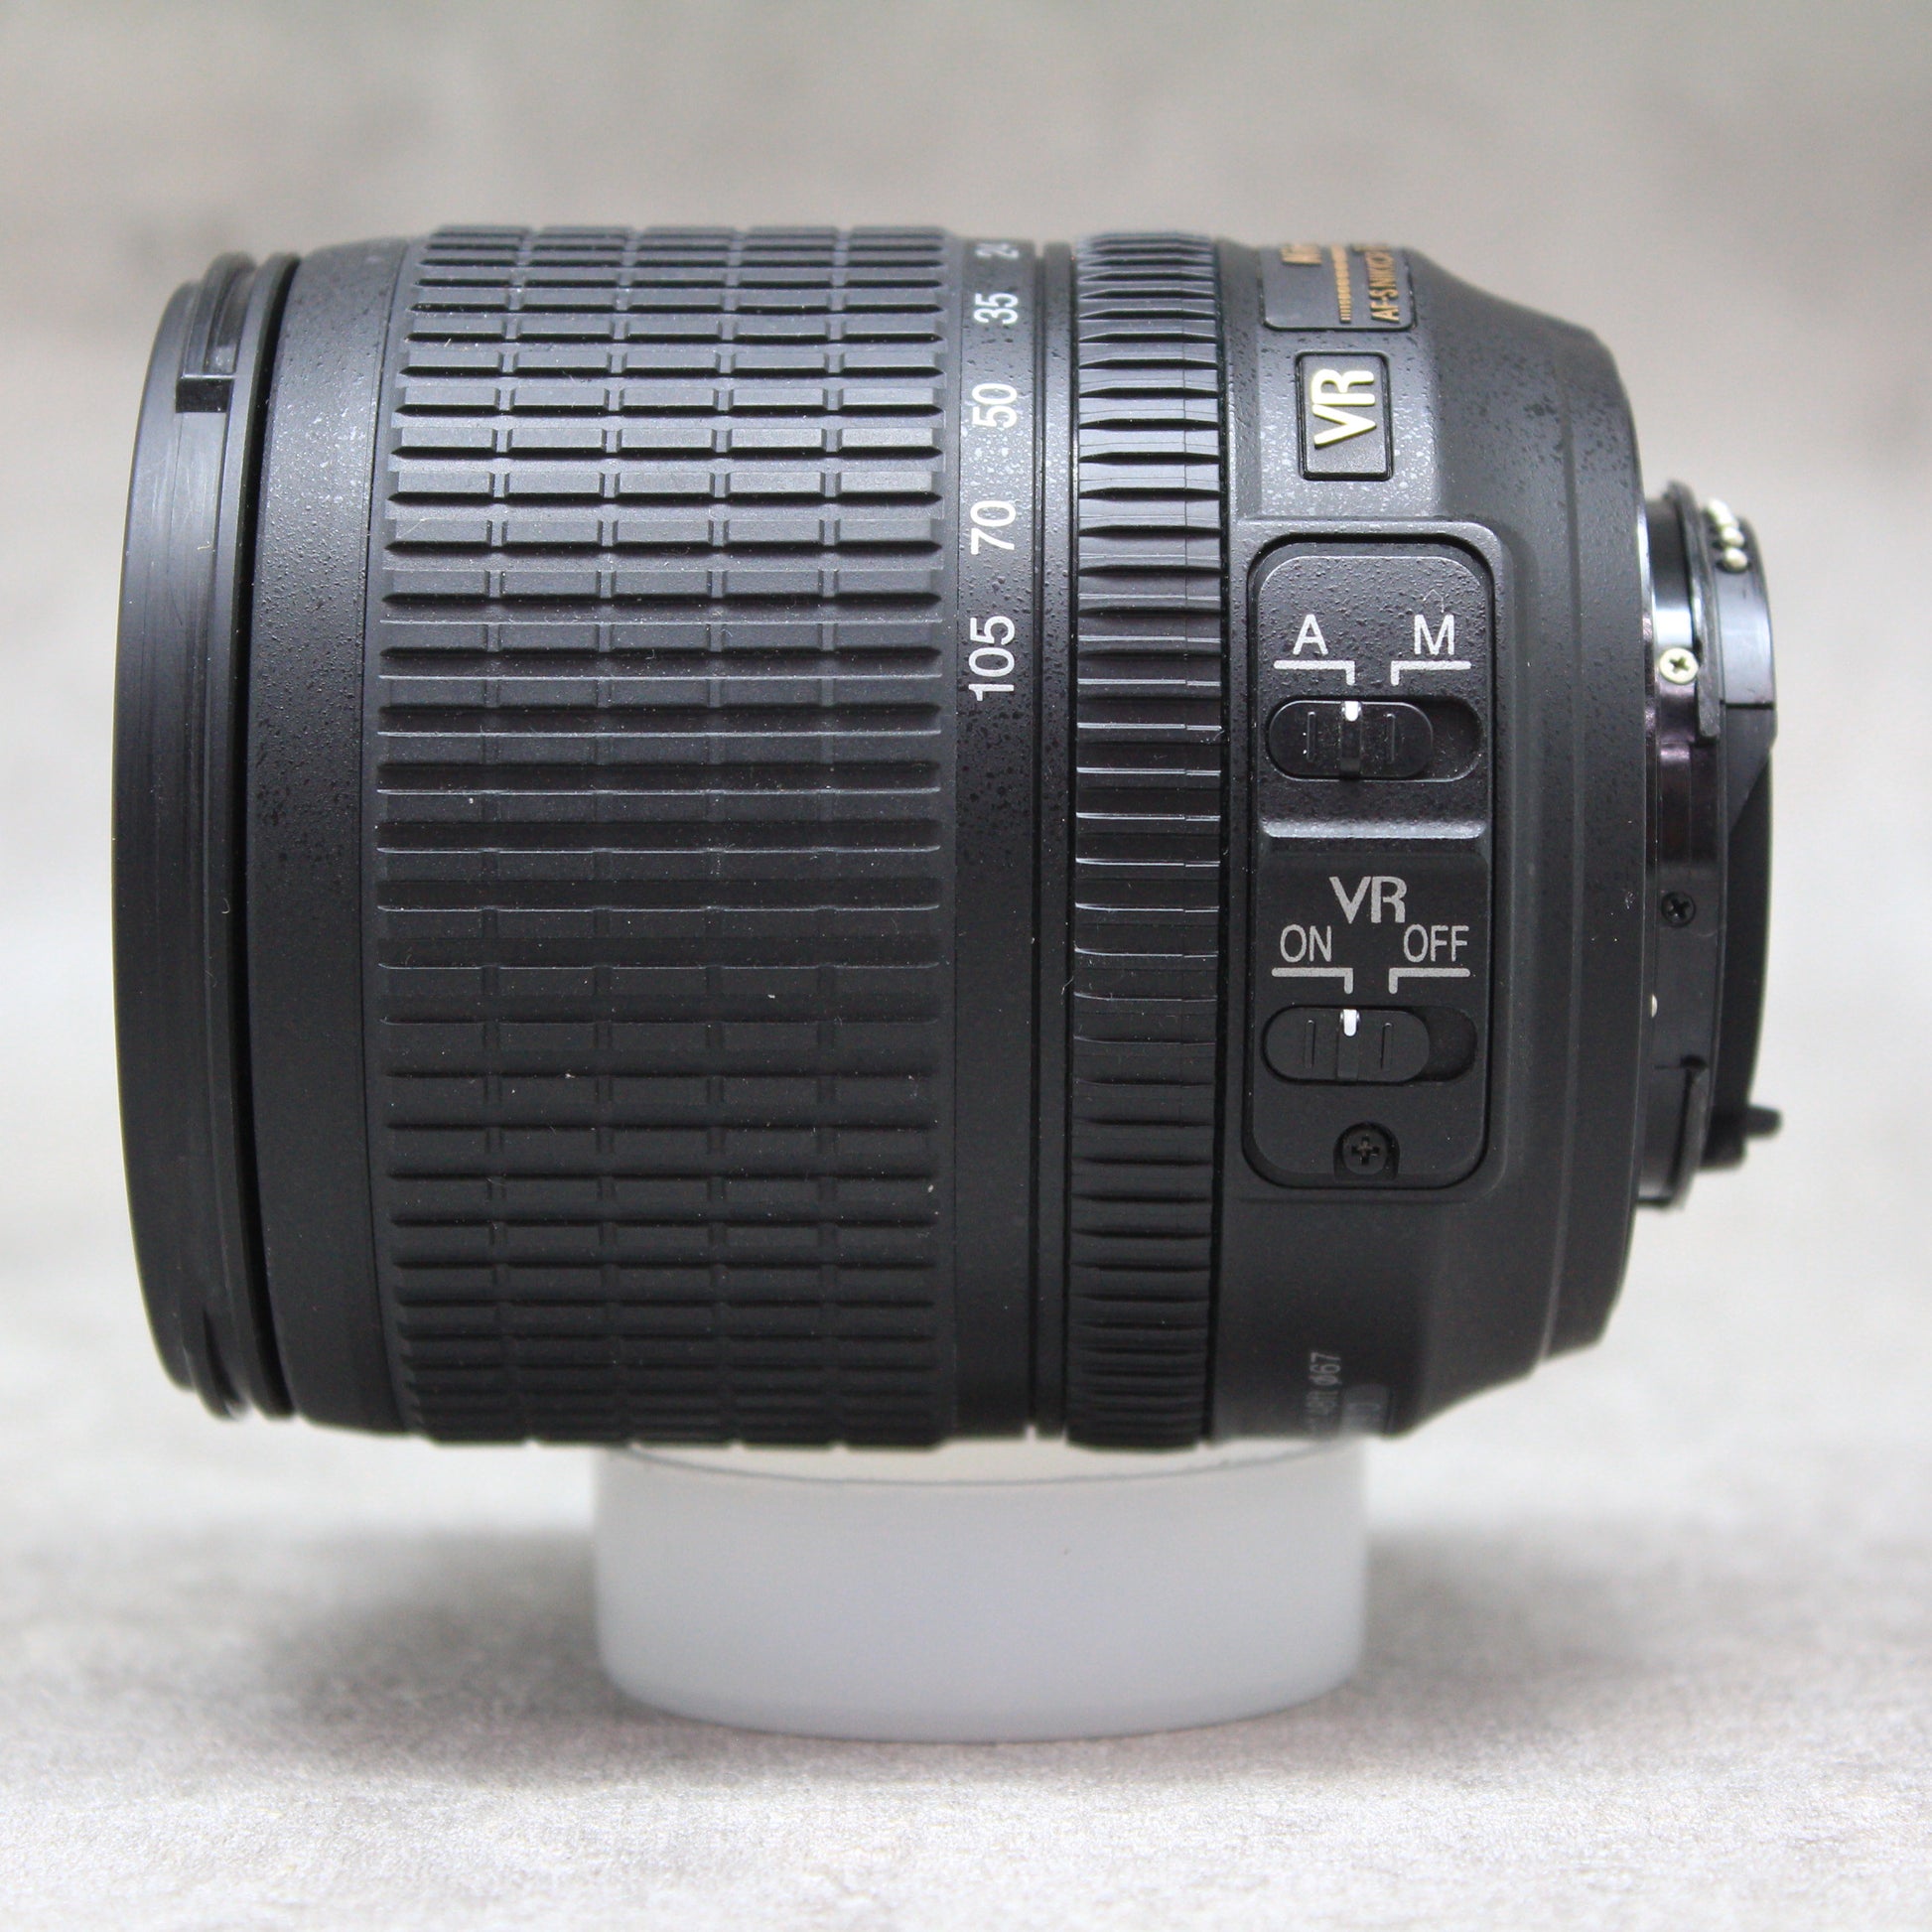 中古品 Nikon AF-S NIKKOR 18-105mm F3.5-5.6G ED VR【10月14日(土) youtube生配信でご紹介】